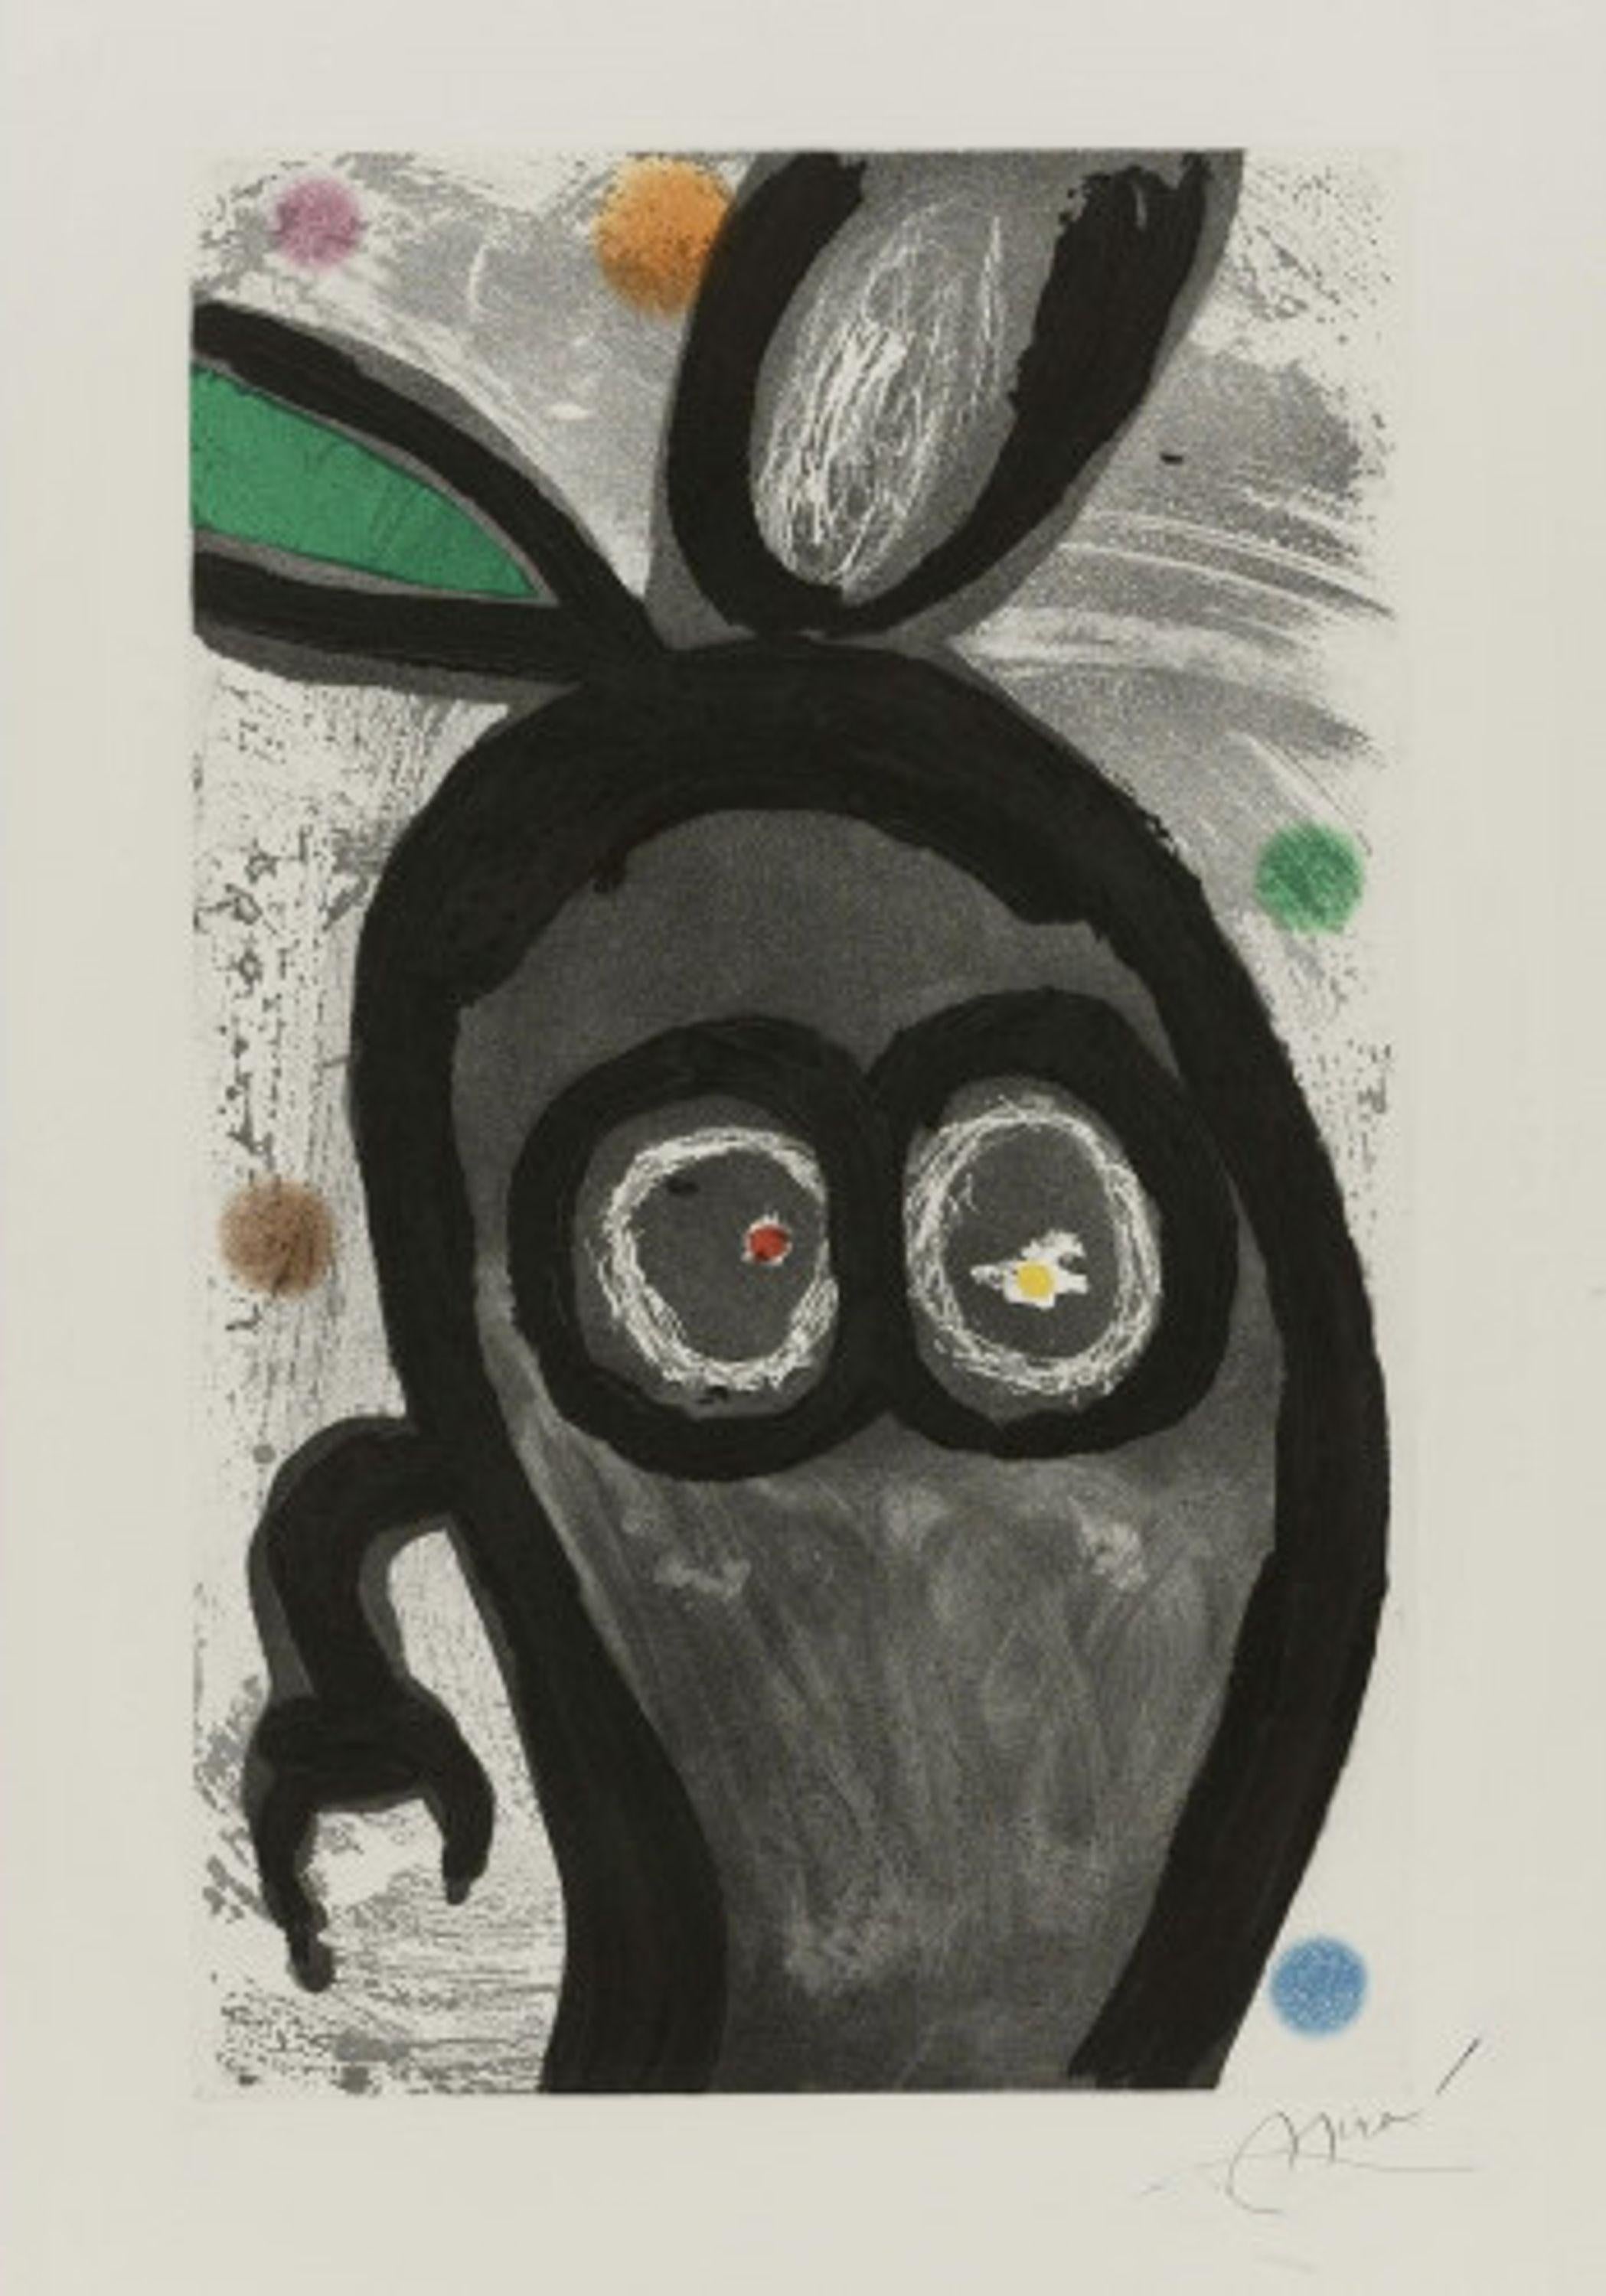 Le Roi des lapins - Print by Joan Miró